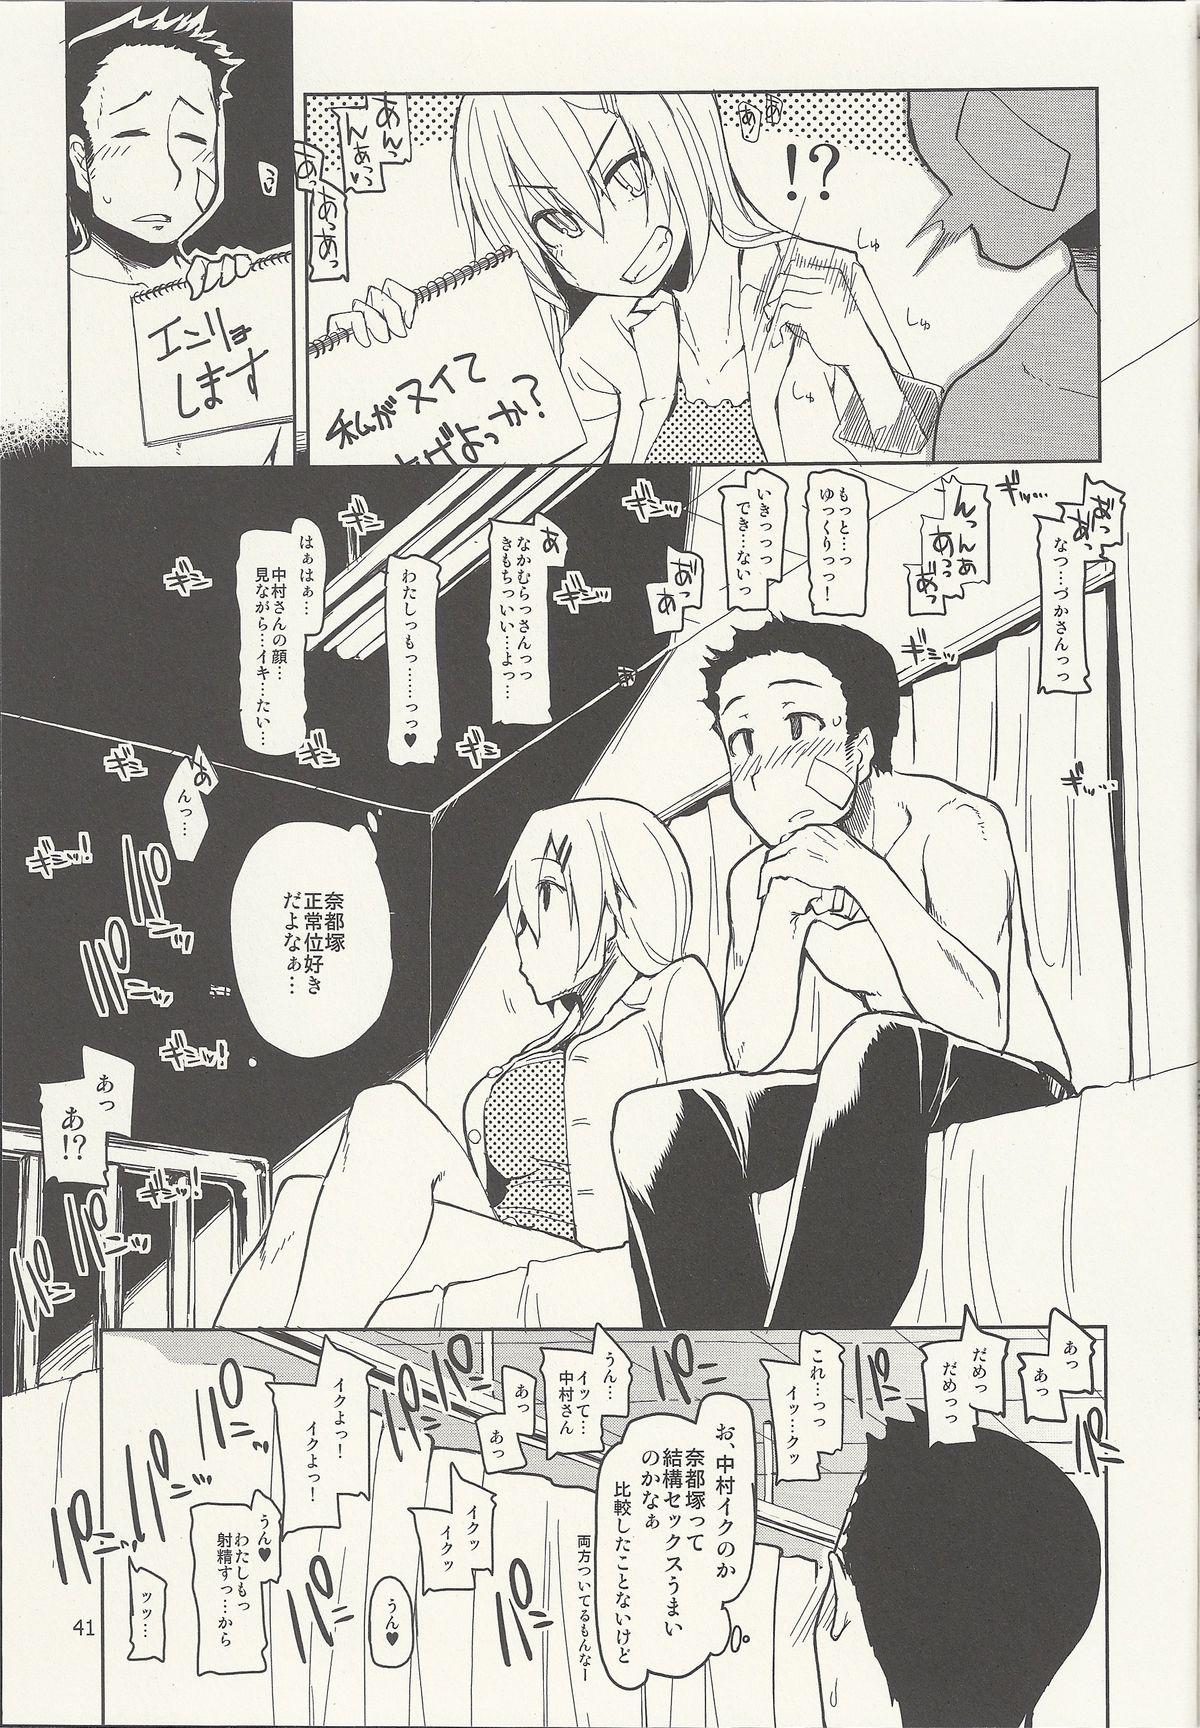 Natsuzuka-san no Himitsu. Vol. 6 Kanketsu Hen 41